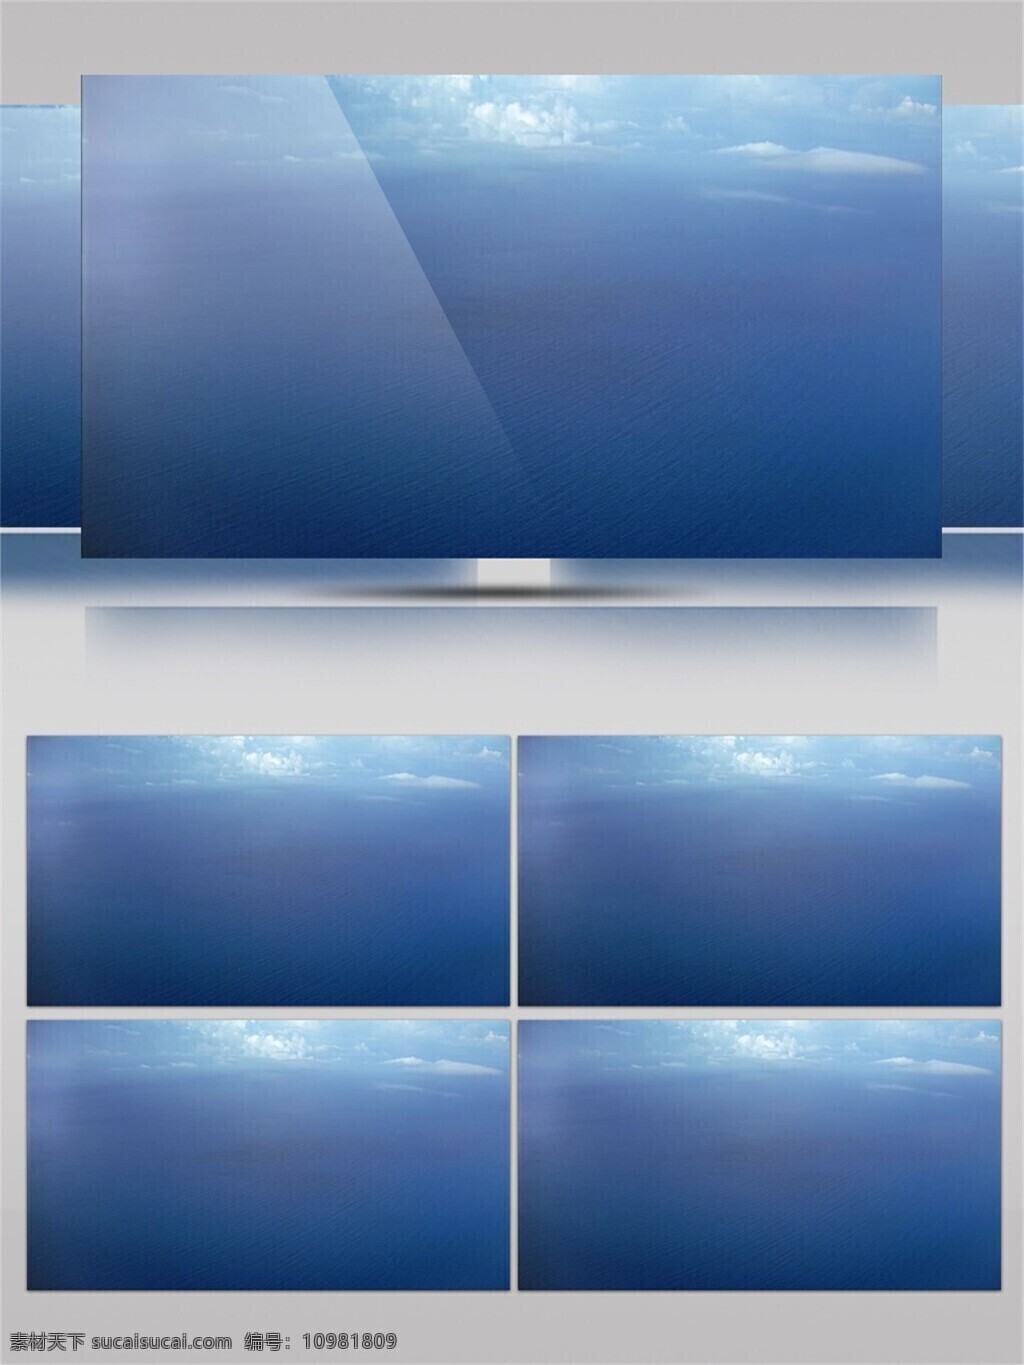 唯美 蓝色 平静 海面 视频 音效 海洋 蓝天 白云 视频素材 大自然 清澈 海平线 浩瀚 地球 视频音效